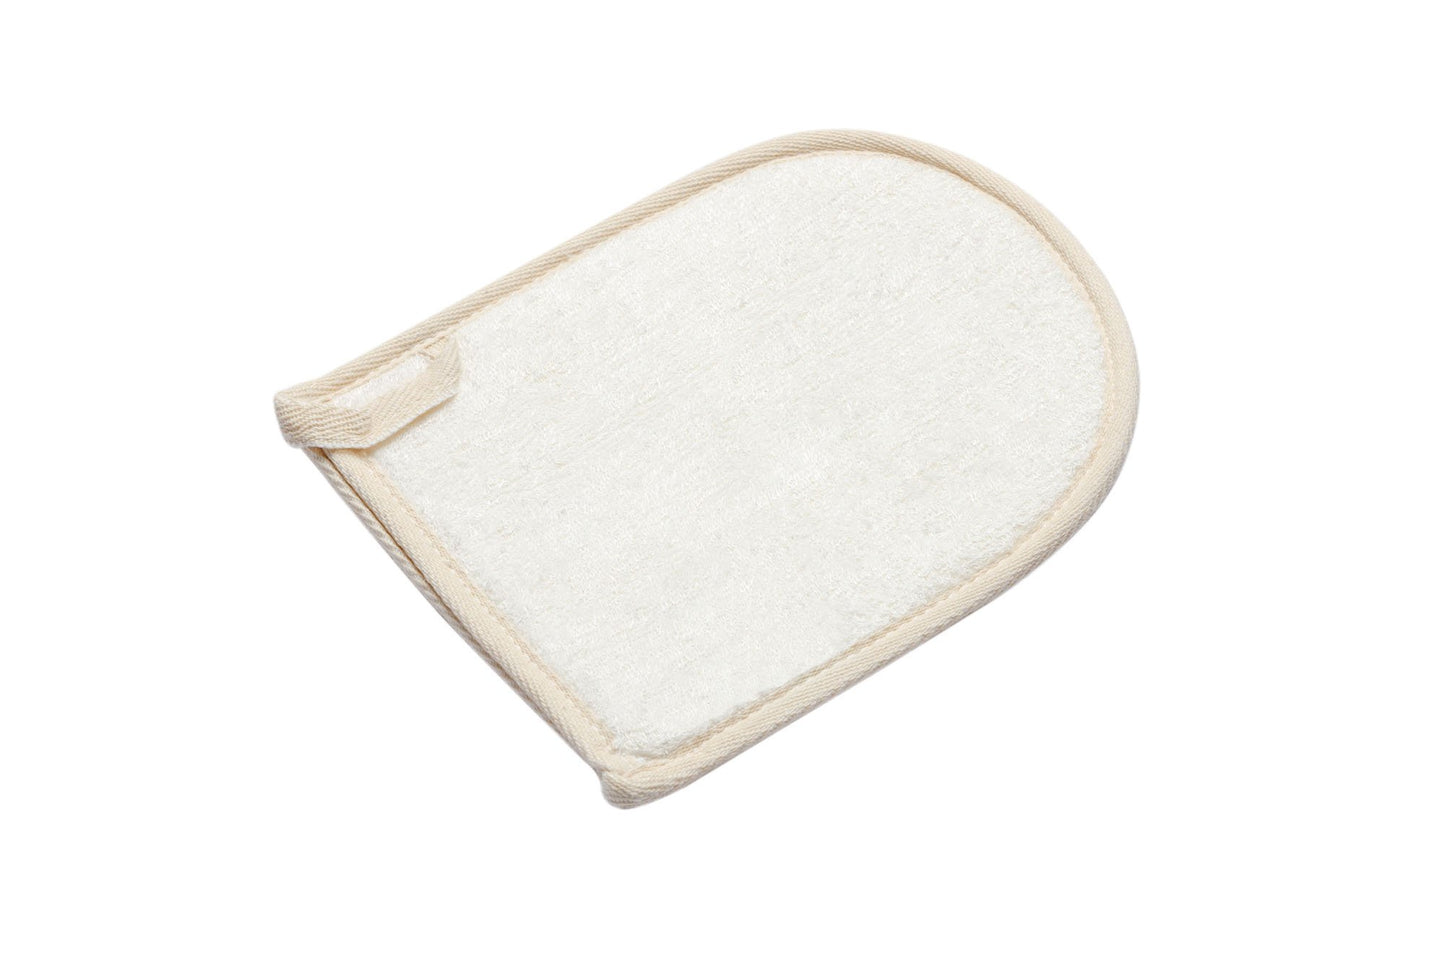 Diagonal view of bathing mitt on white background